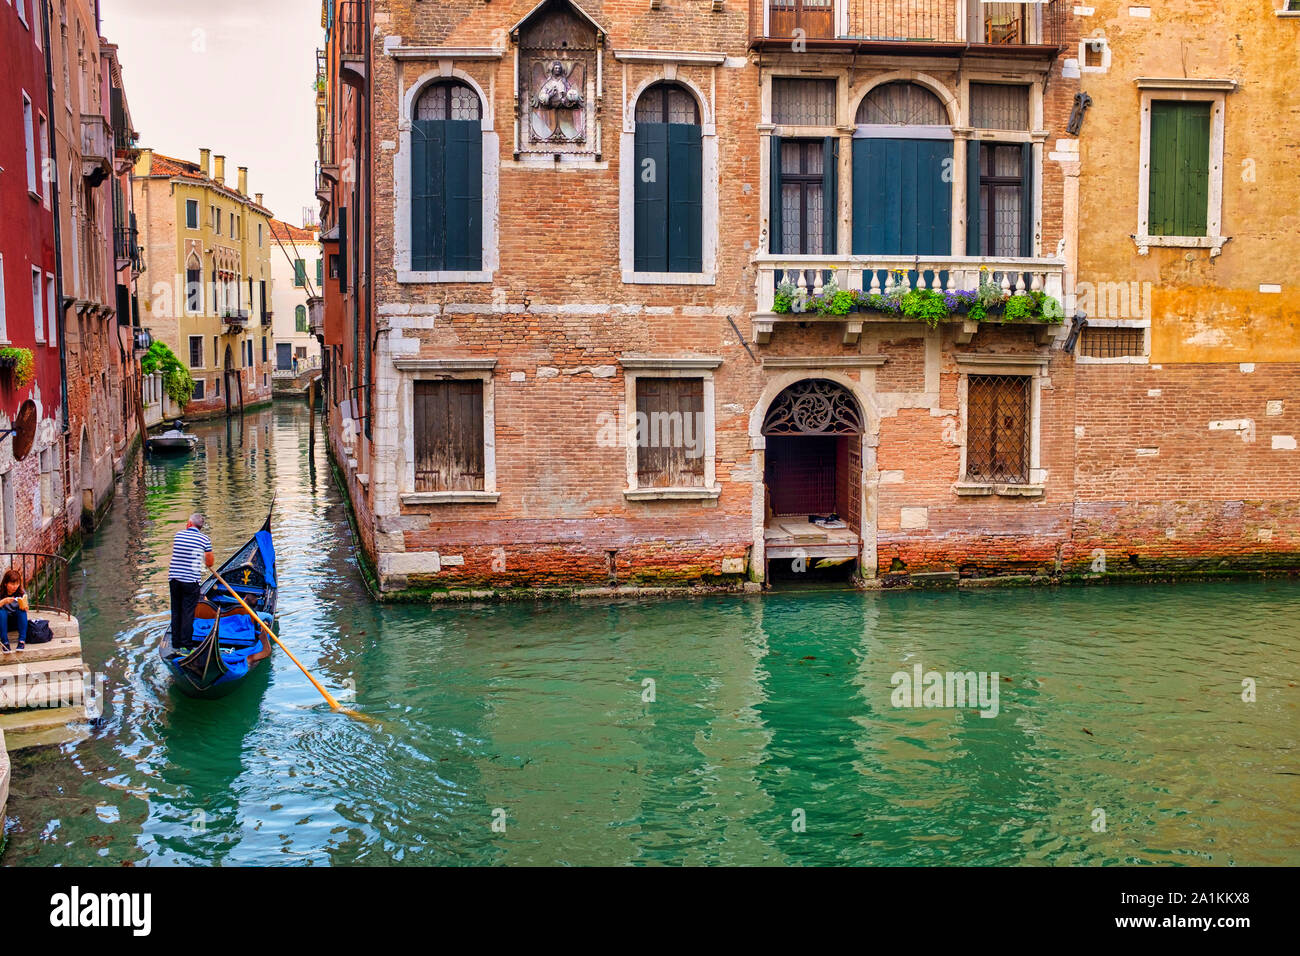 Fondamenta de l’Anzolo between the Rio di San Zulian and the Rio di Santa Maria Formosa, Venice, Italy Stock Photo